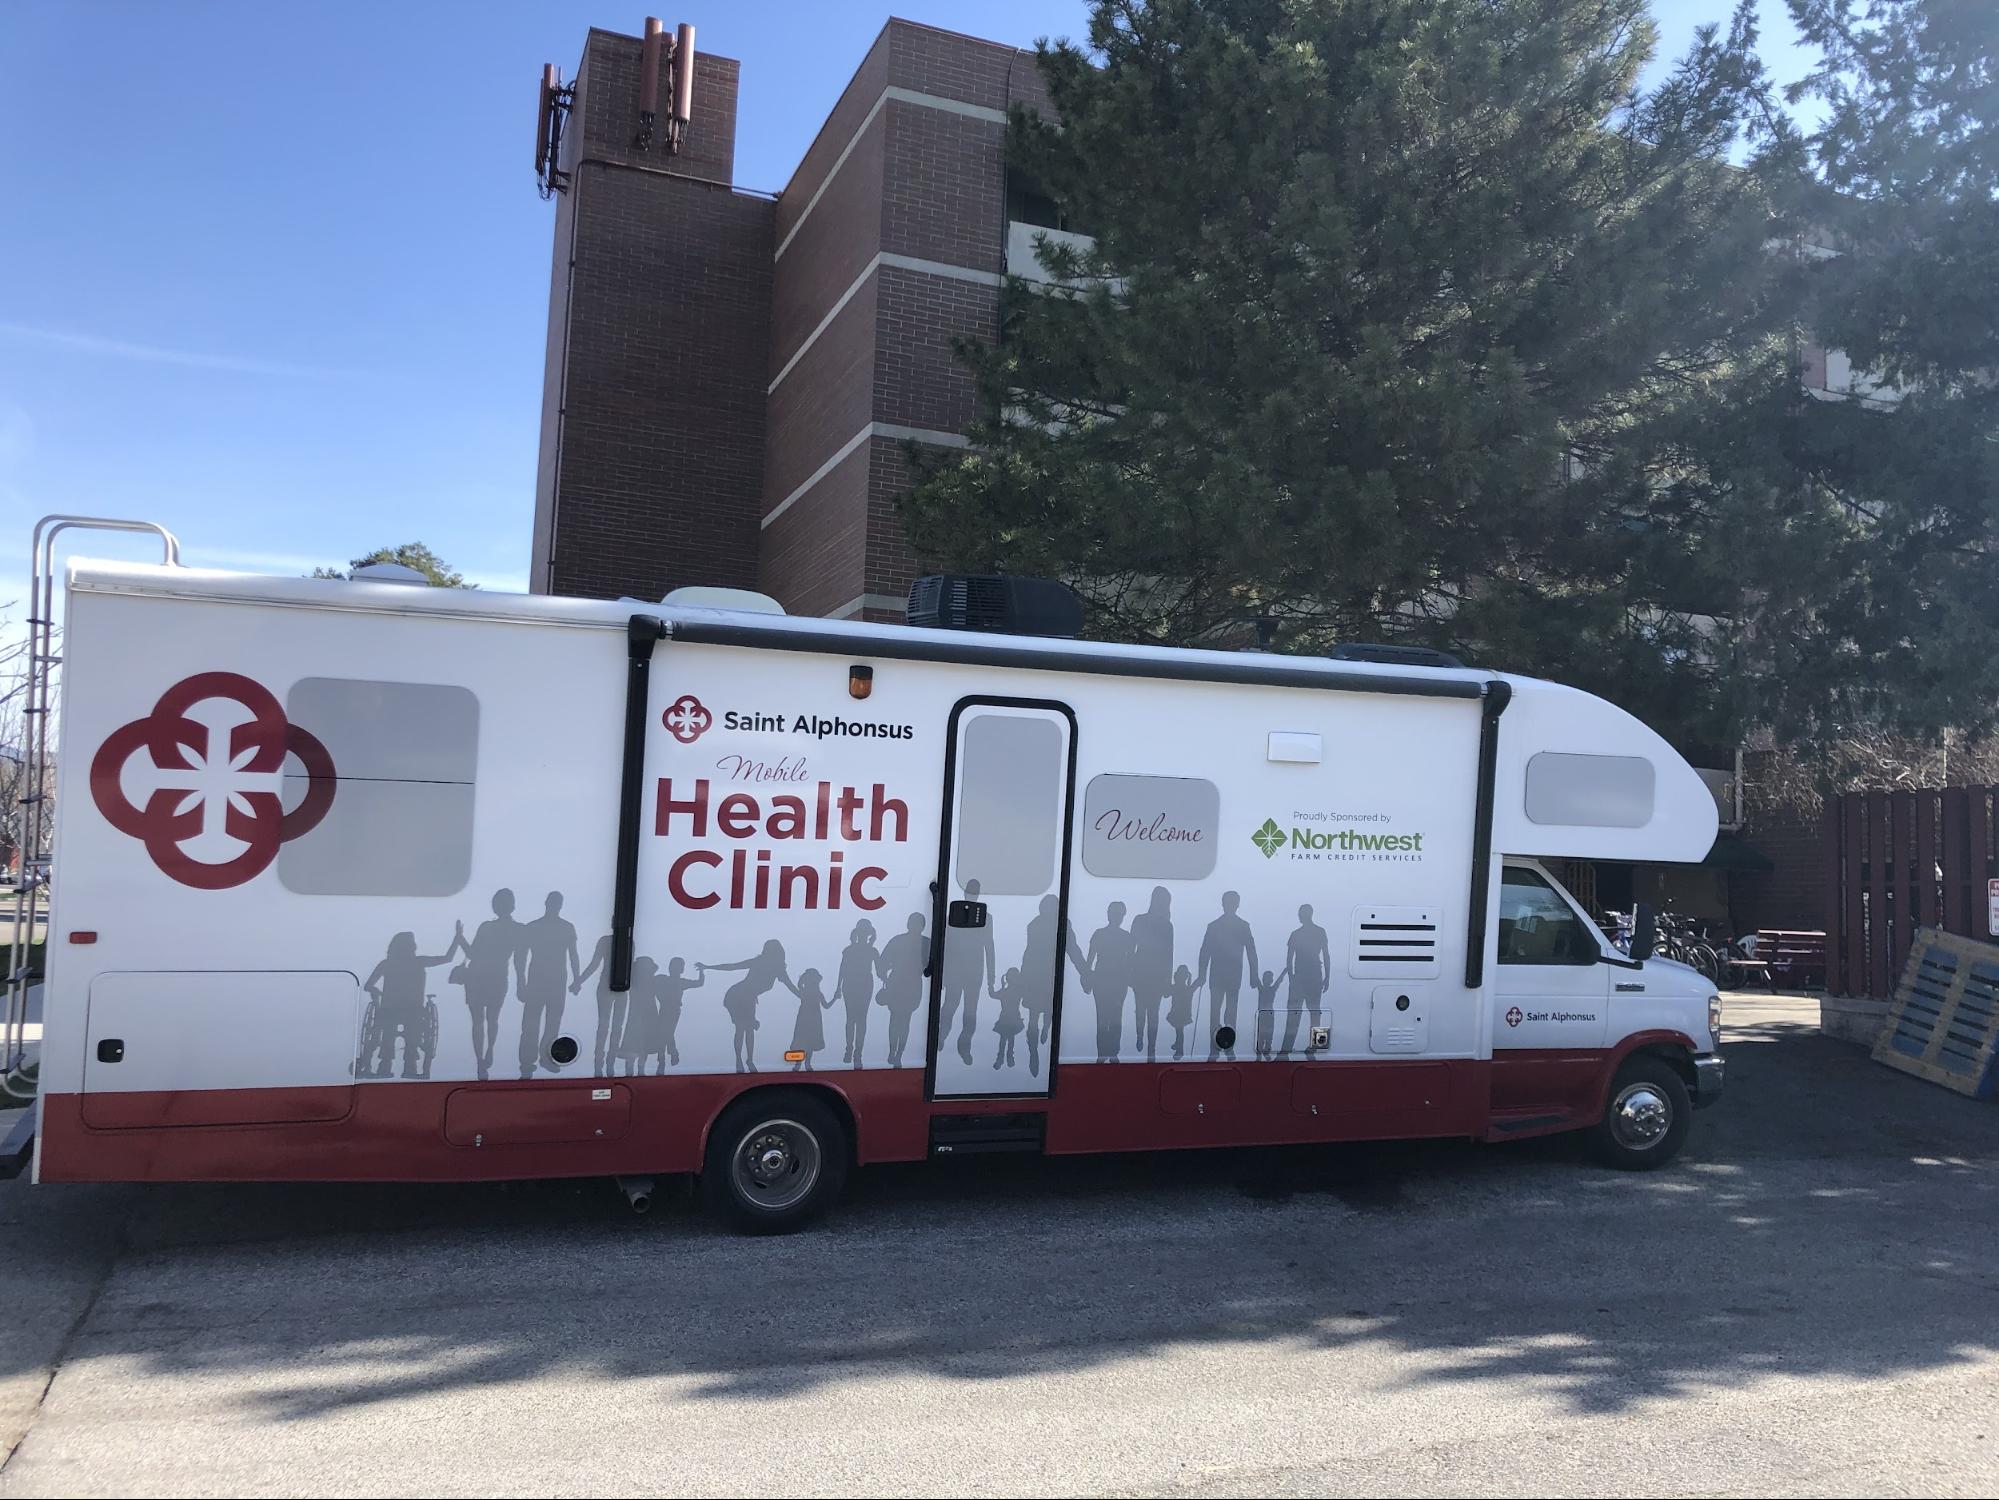 Saint Alphonsus Mobile Health Clinic bus parked.